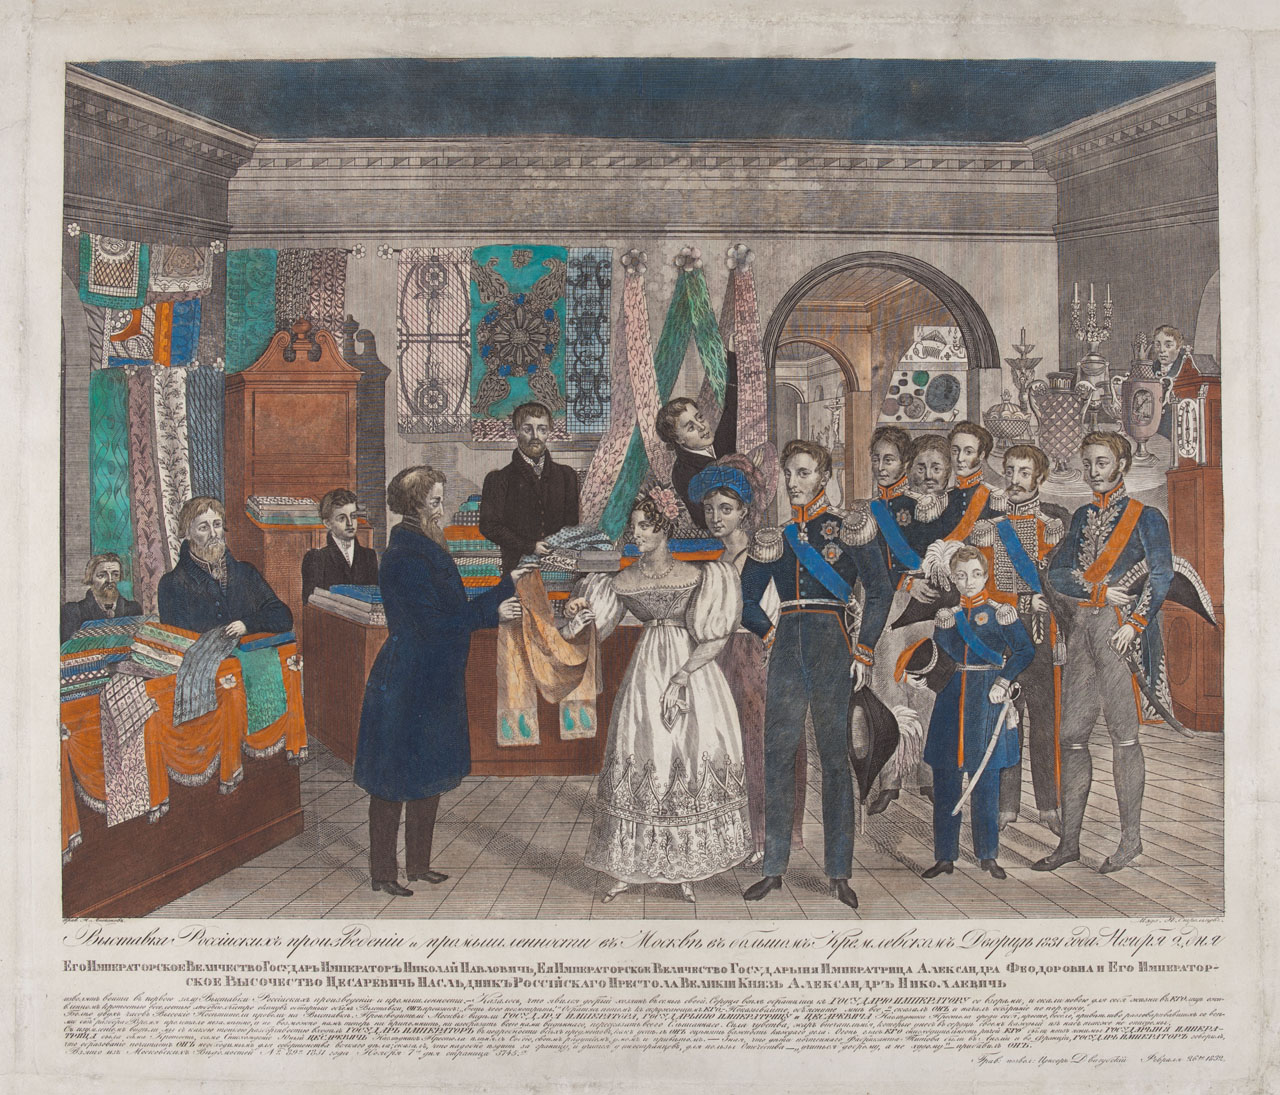 Med običajnimi ljudmi so bili priljubljeni tudi uradni portreti carja in carice. Na večini portretov je mogoče videti tradicionalni način življenja in veliko število otrok v carski družini, s čimer so se poudarjale družinske in državne vrednote. / Na sliki: Nikolaj I. z družino ob obisku industrijske razstave v Moskvi 2. novembra 1831, 1832.